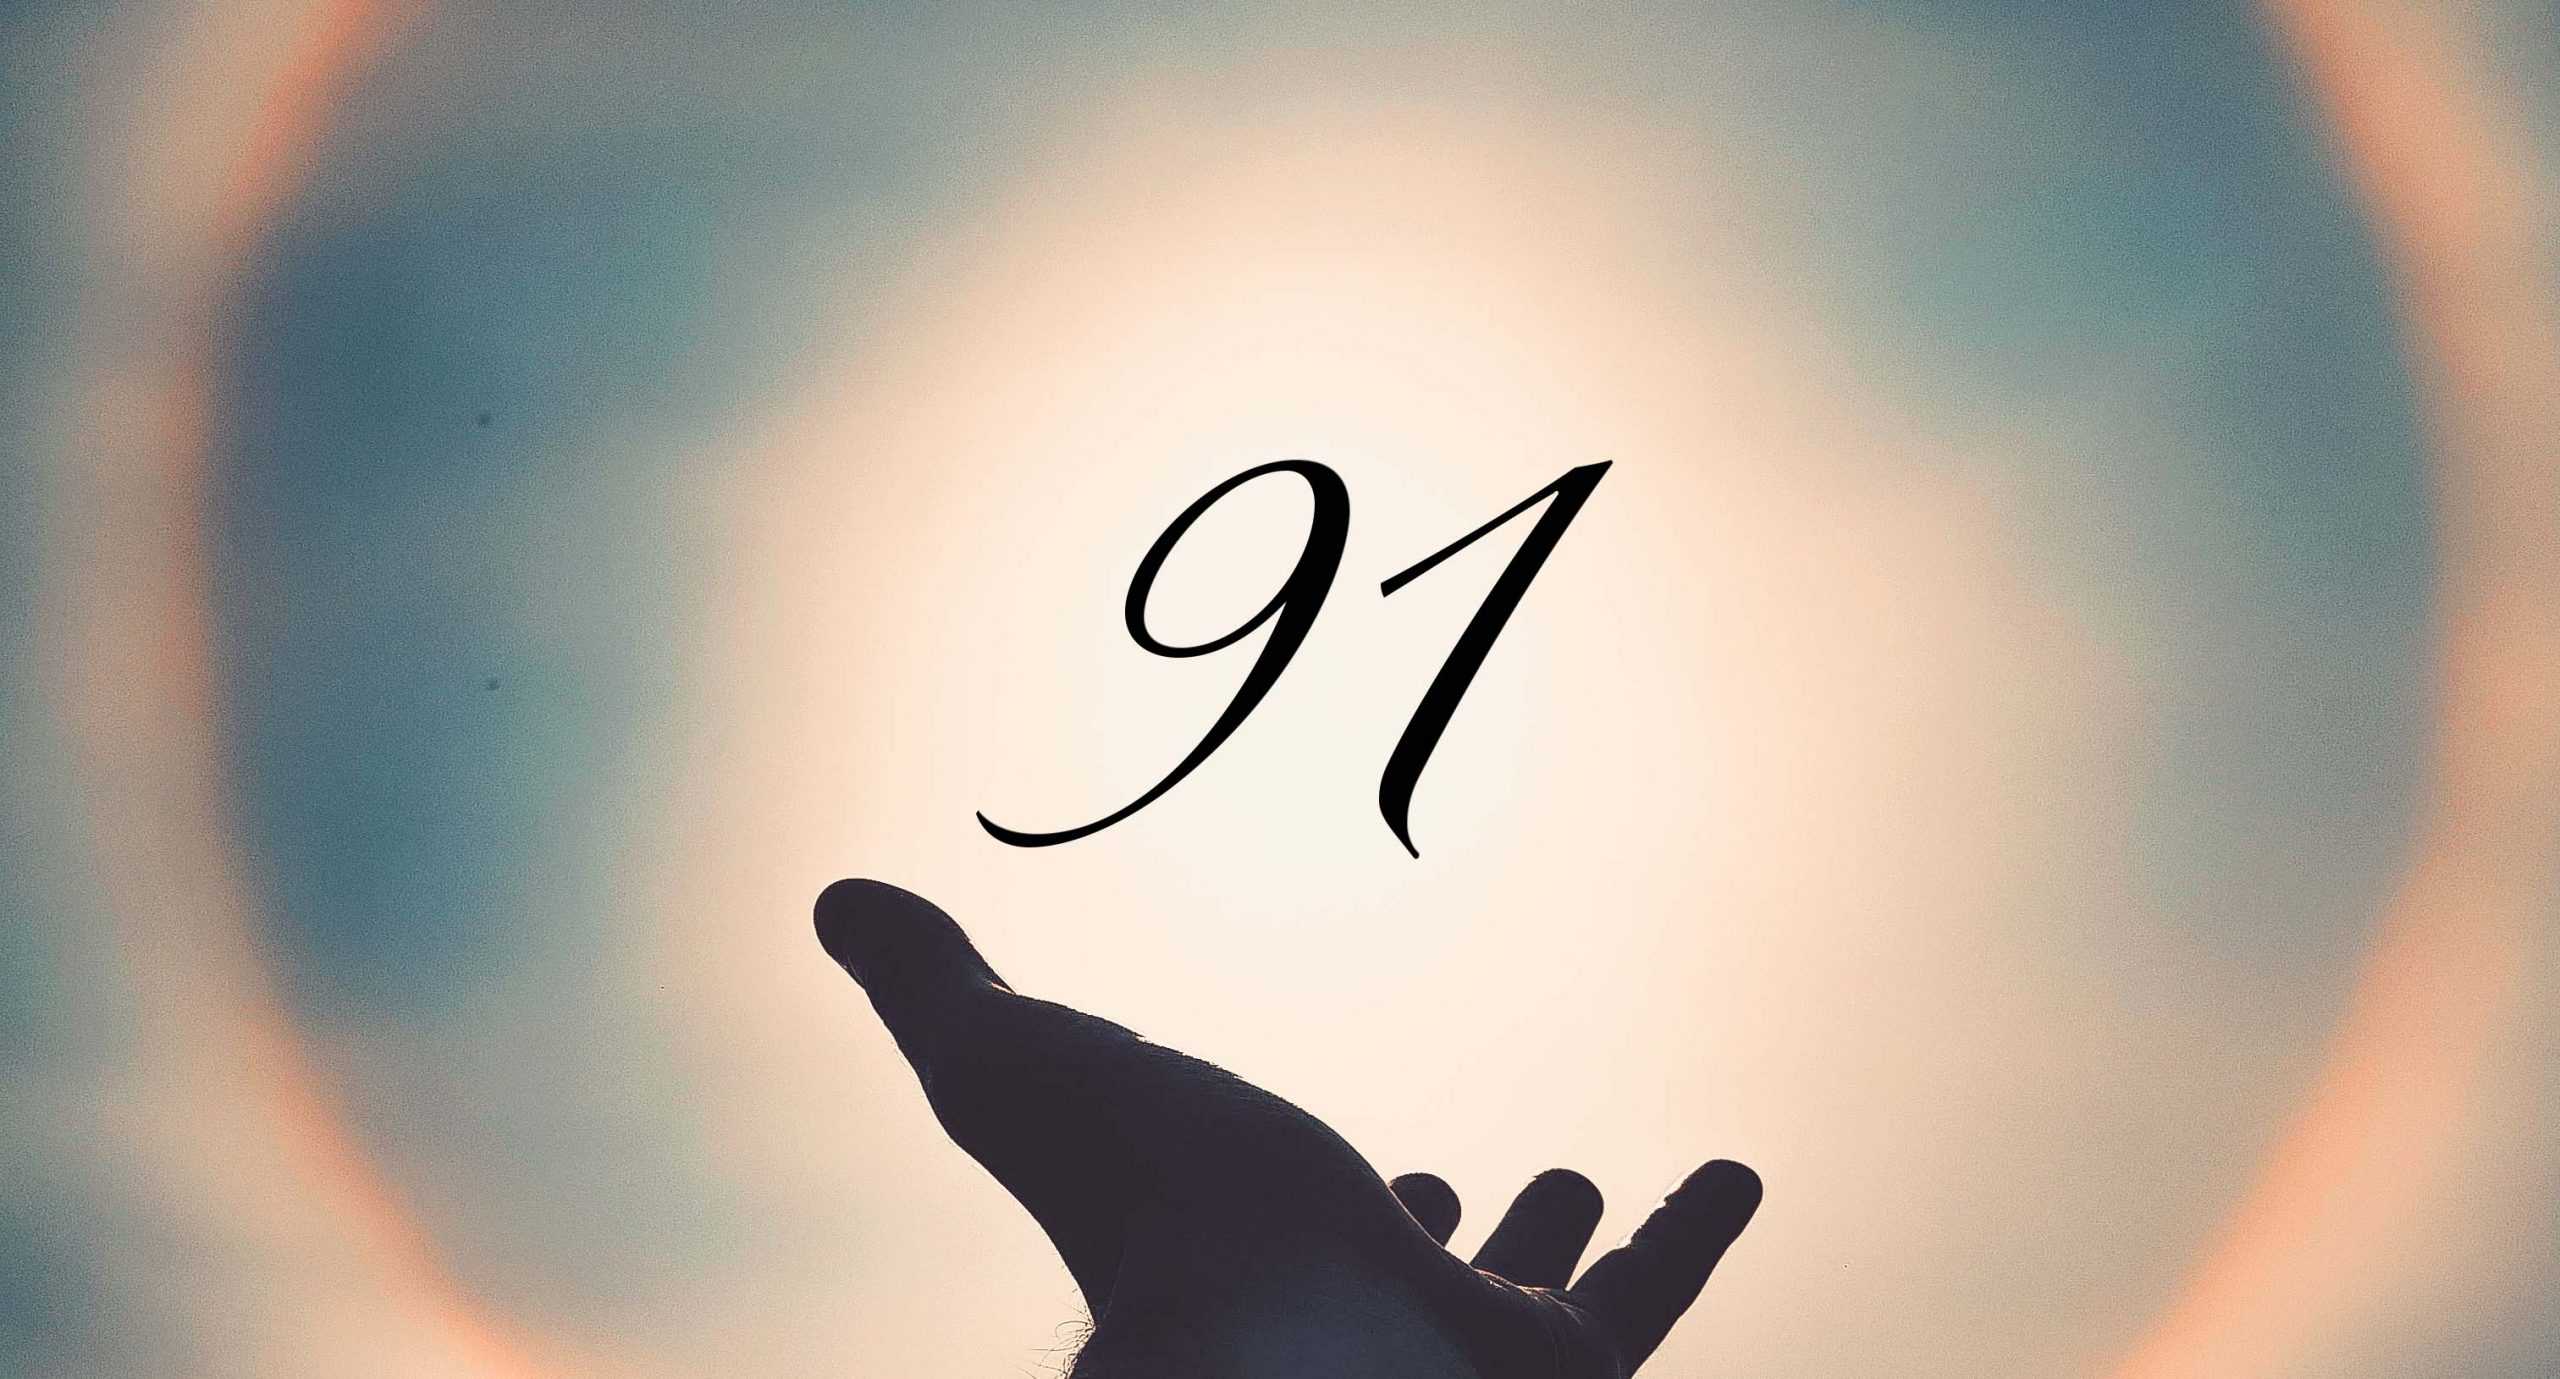 Signification du nombre 91